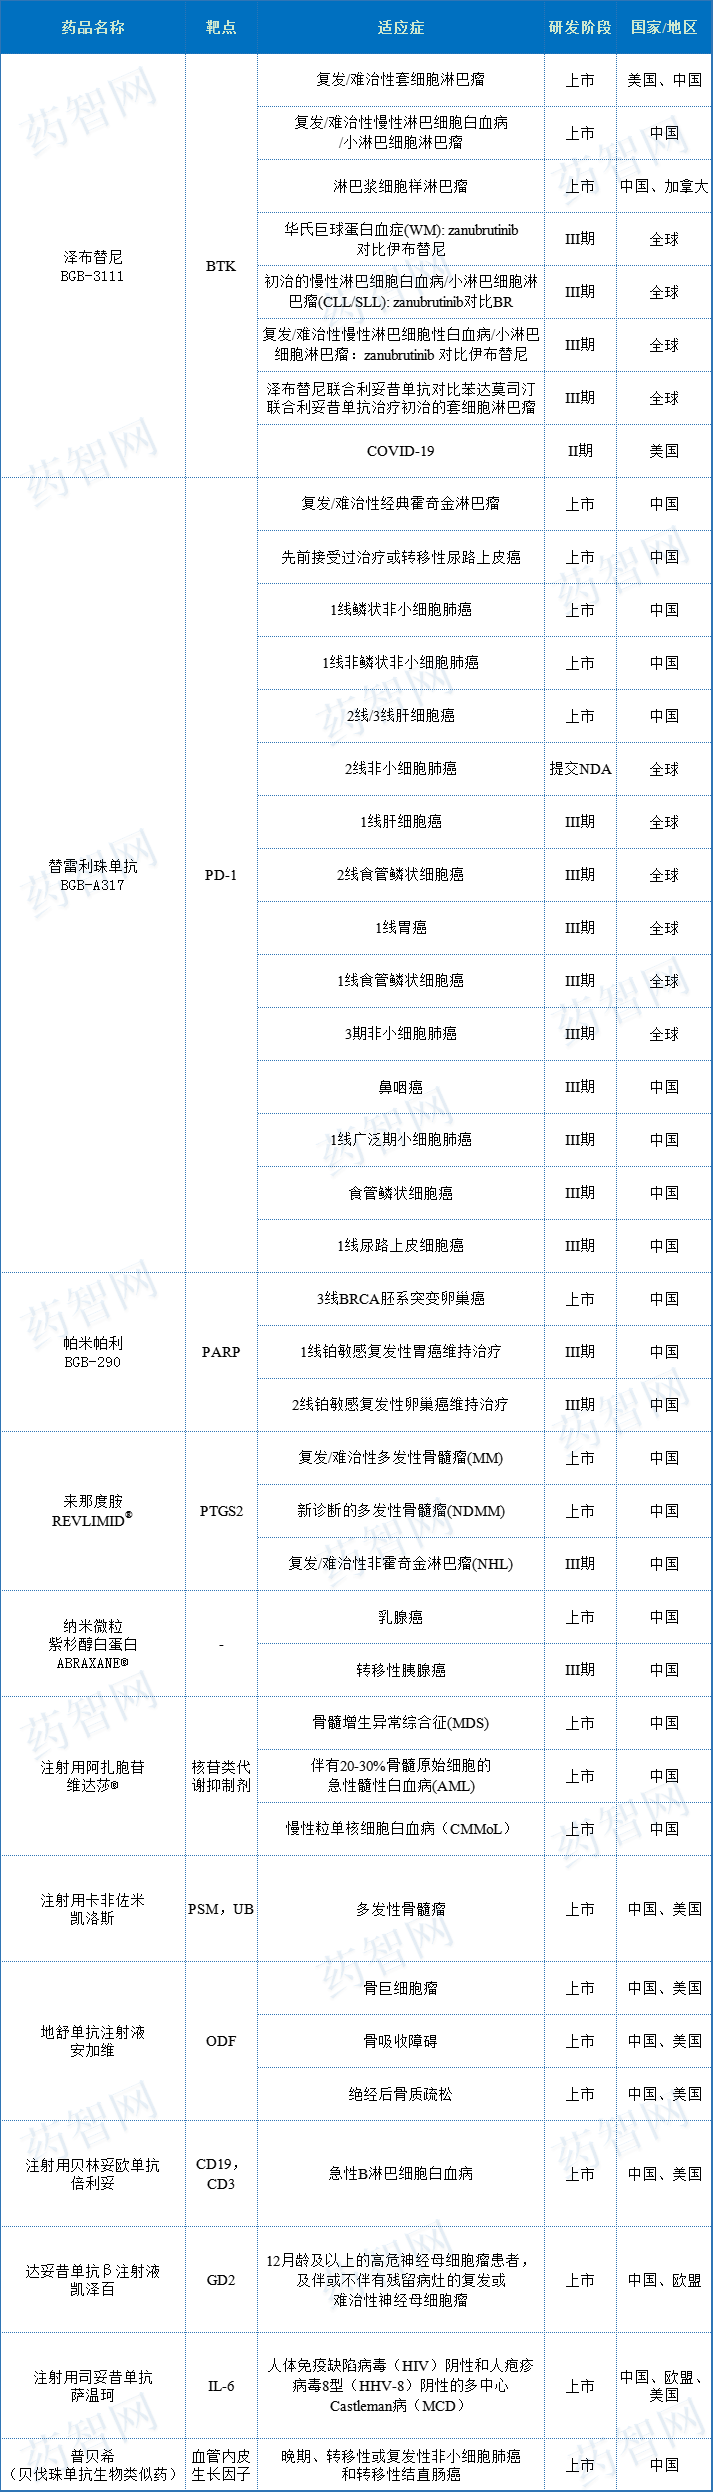 维达莎(注射用阿扎胞苷),由安进授权在中国大陆销售安加维(地舒单抗